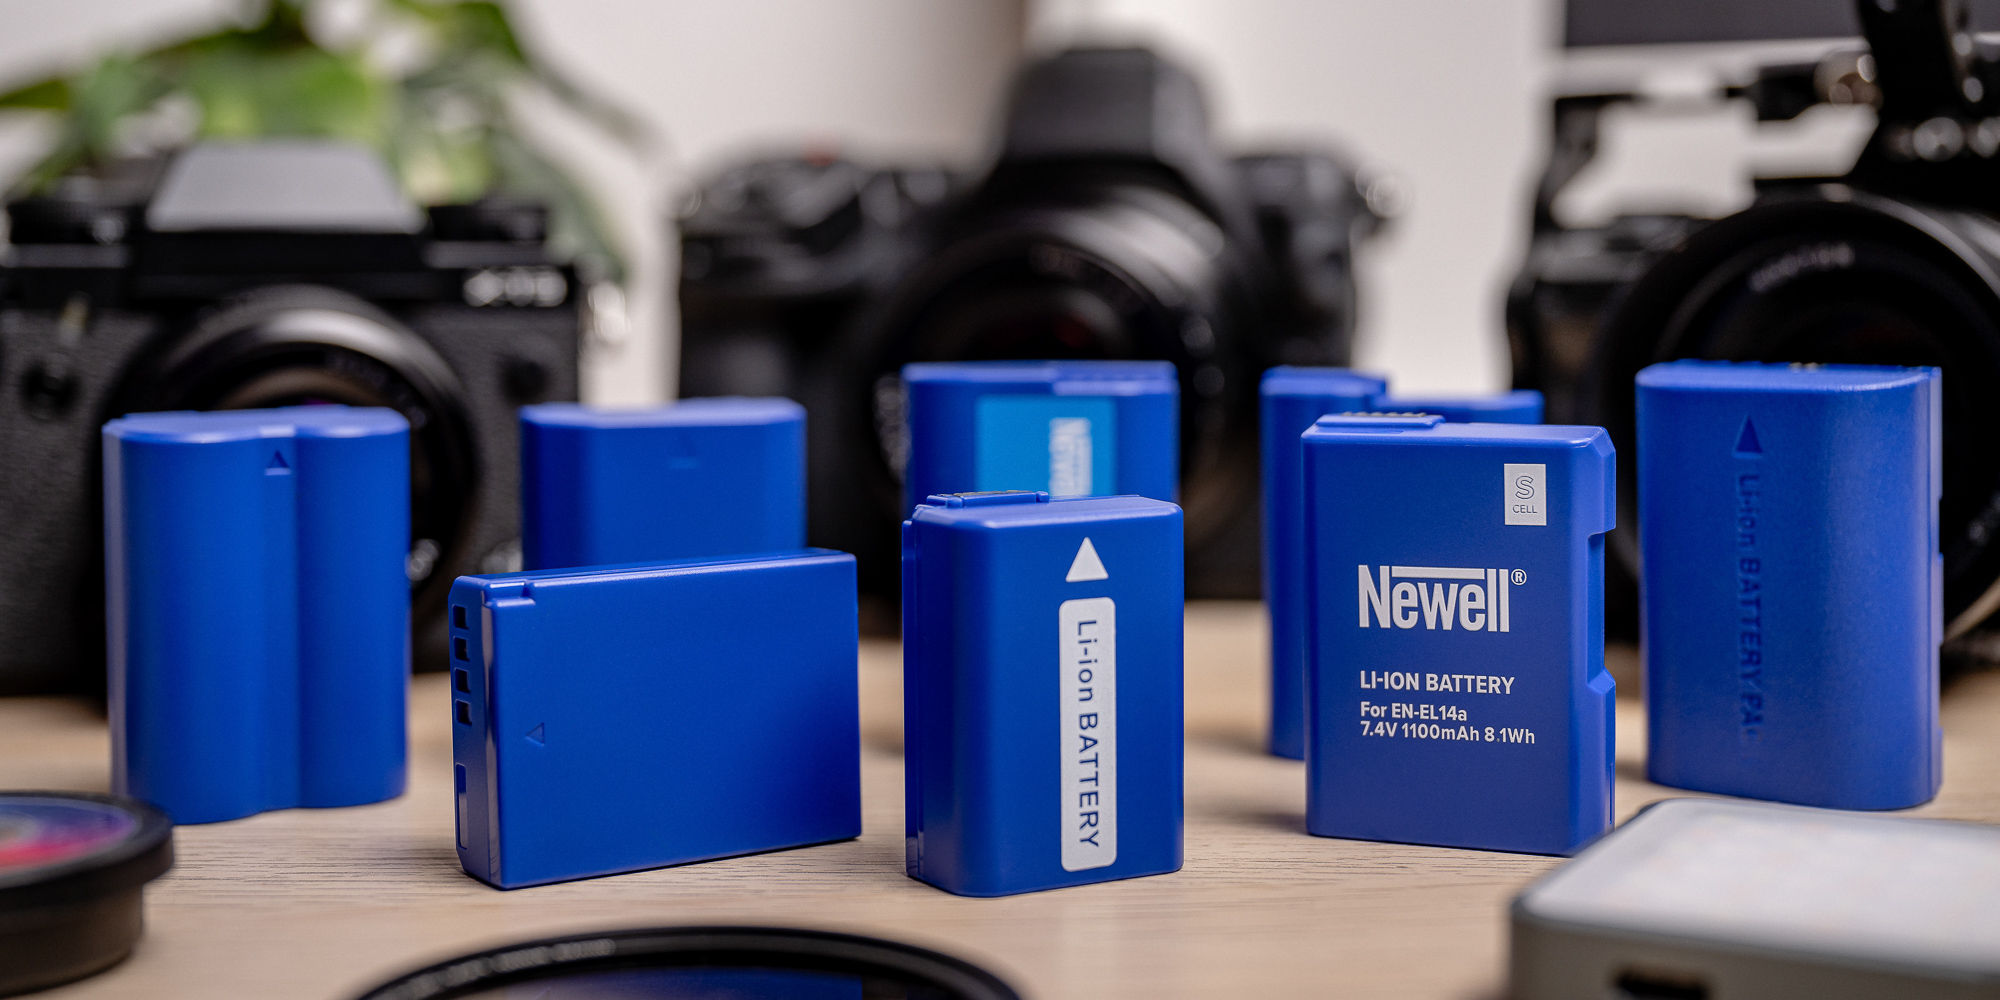 Acumulador Newell SupraCell Protect para LP-E10 de Canon